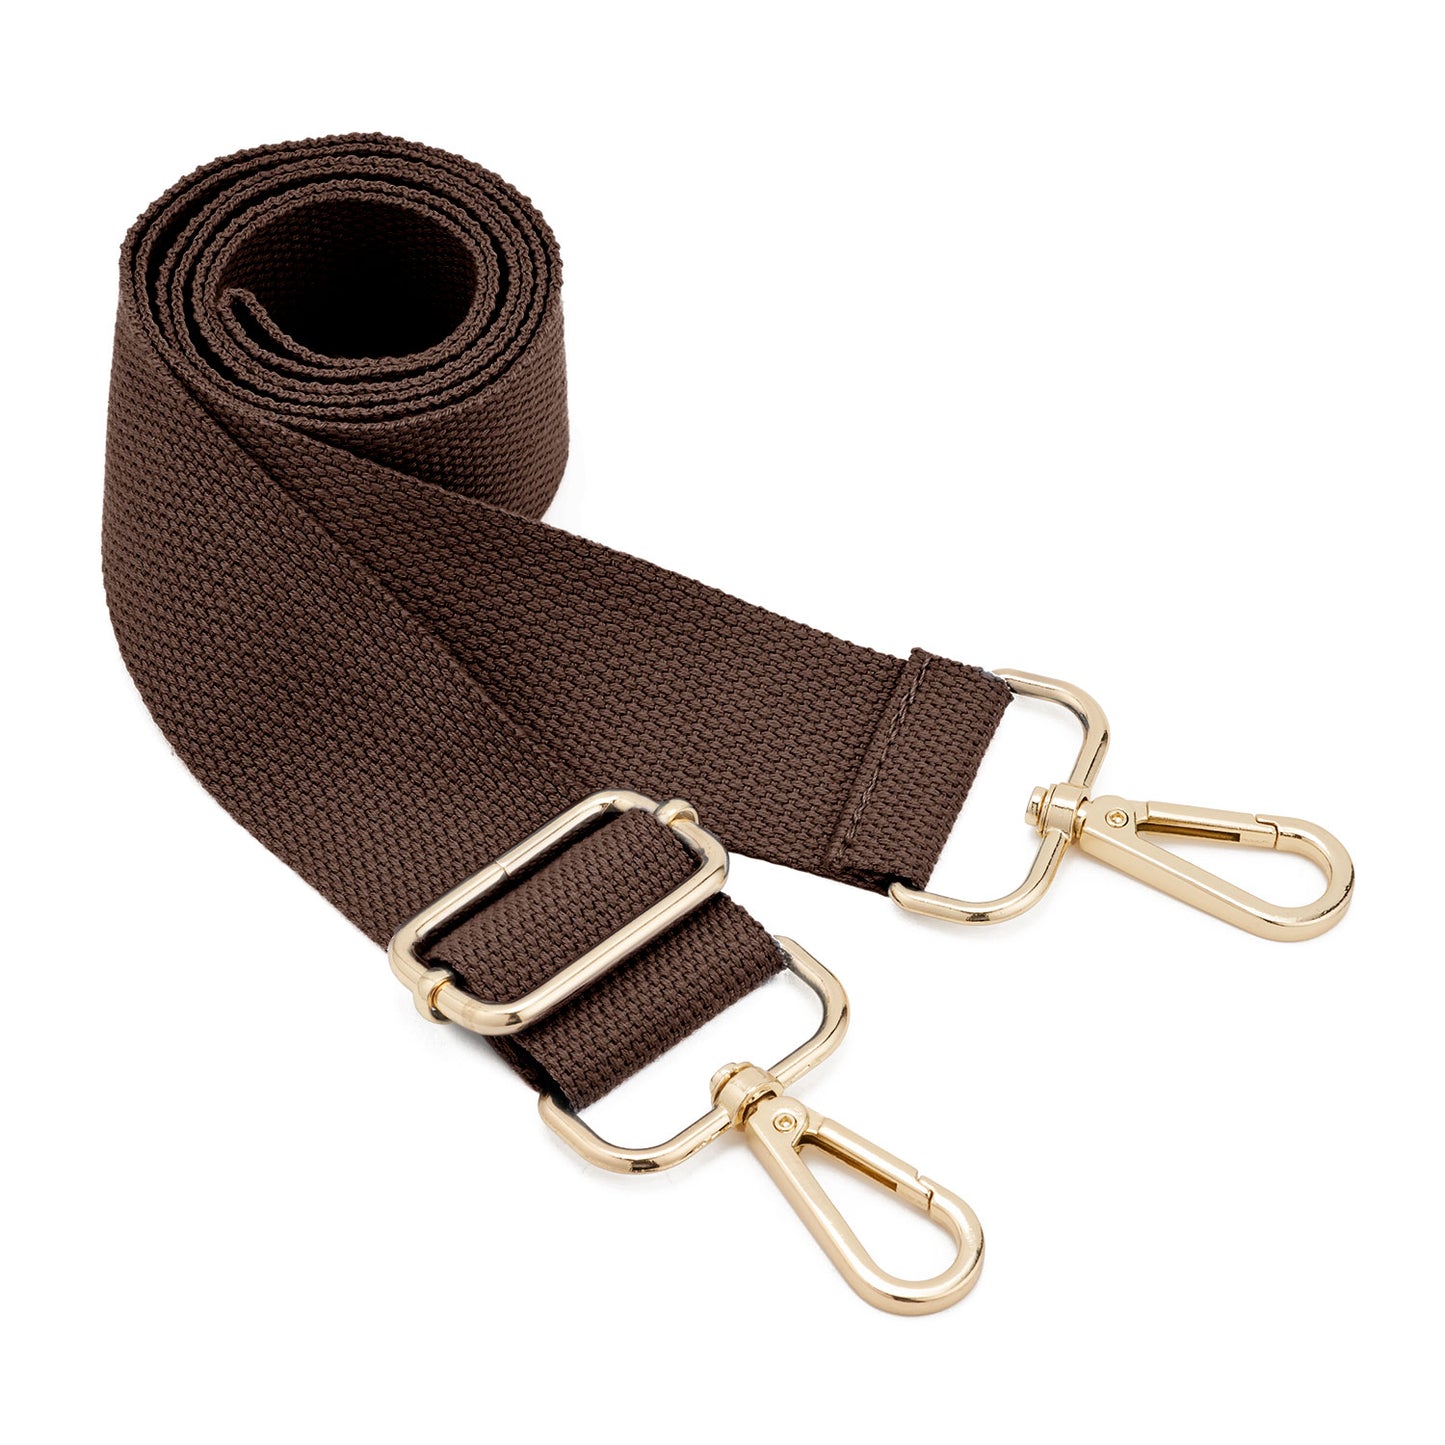 Wide Purse Straps Replacement Adjustable Shoulder Straps For Bag Handbag,  Bohemian Replacement Belt Shoulder Bag Strap